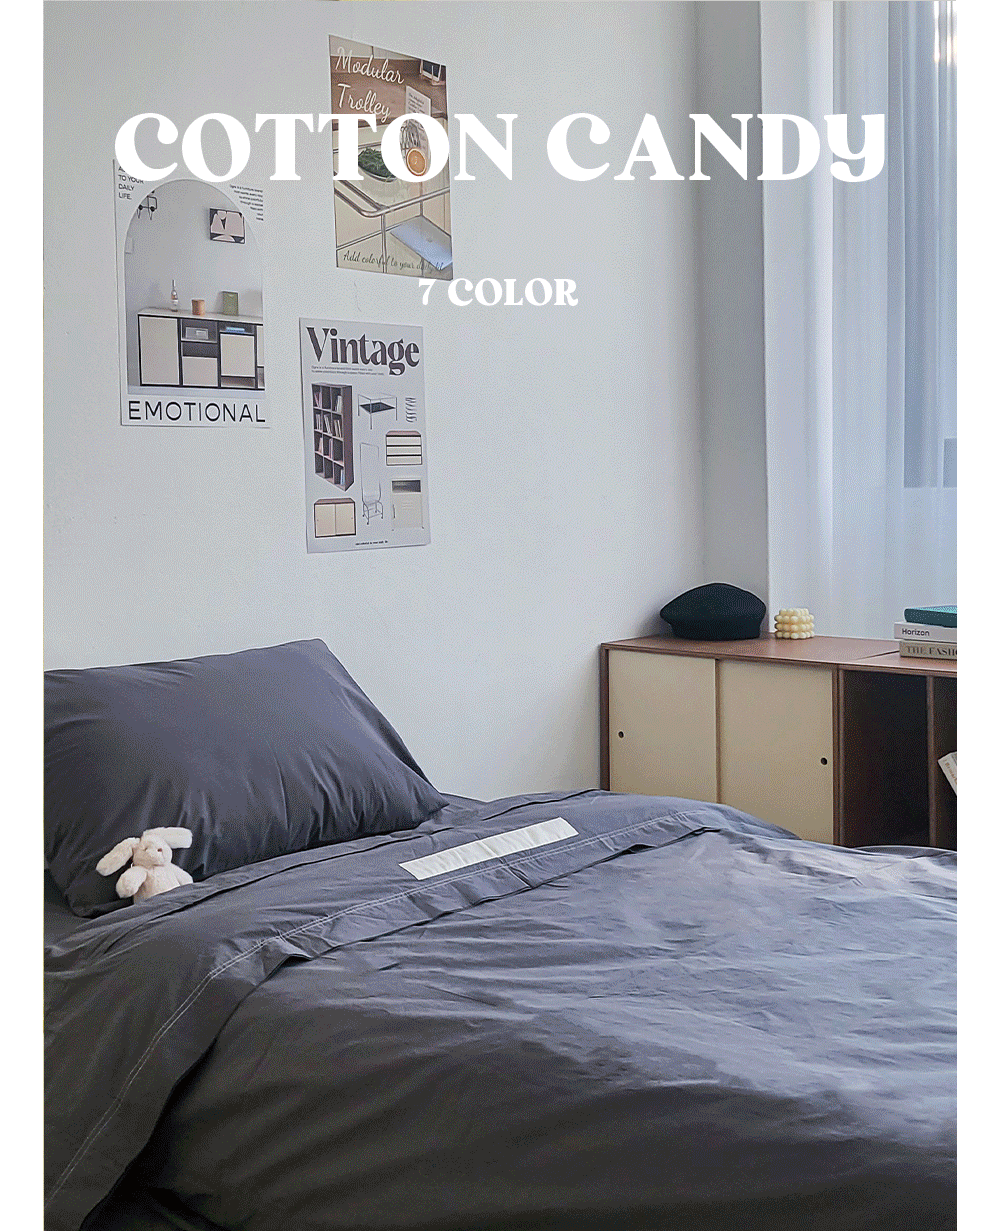 COTTON CANDY_7COLOR